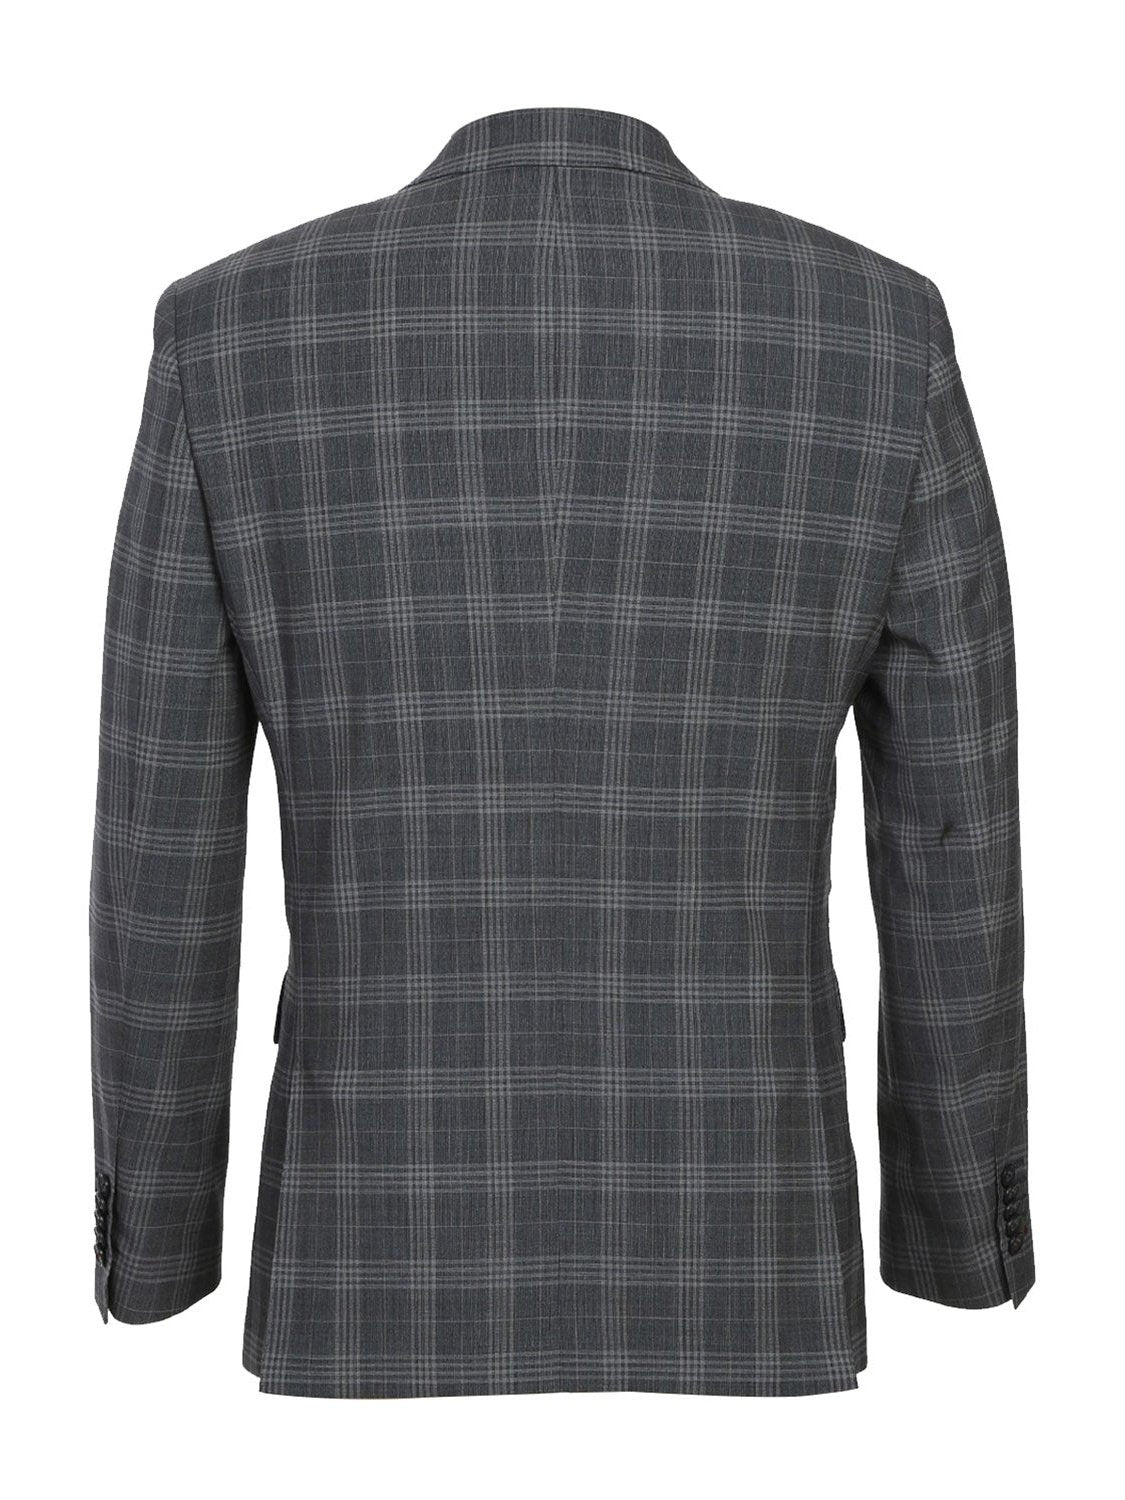 Gray Check Peak Wool Suit